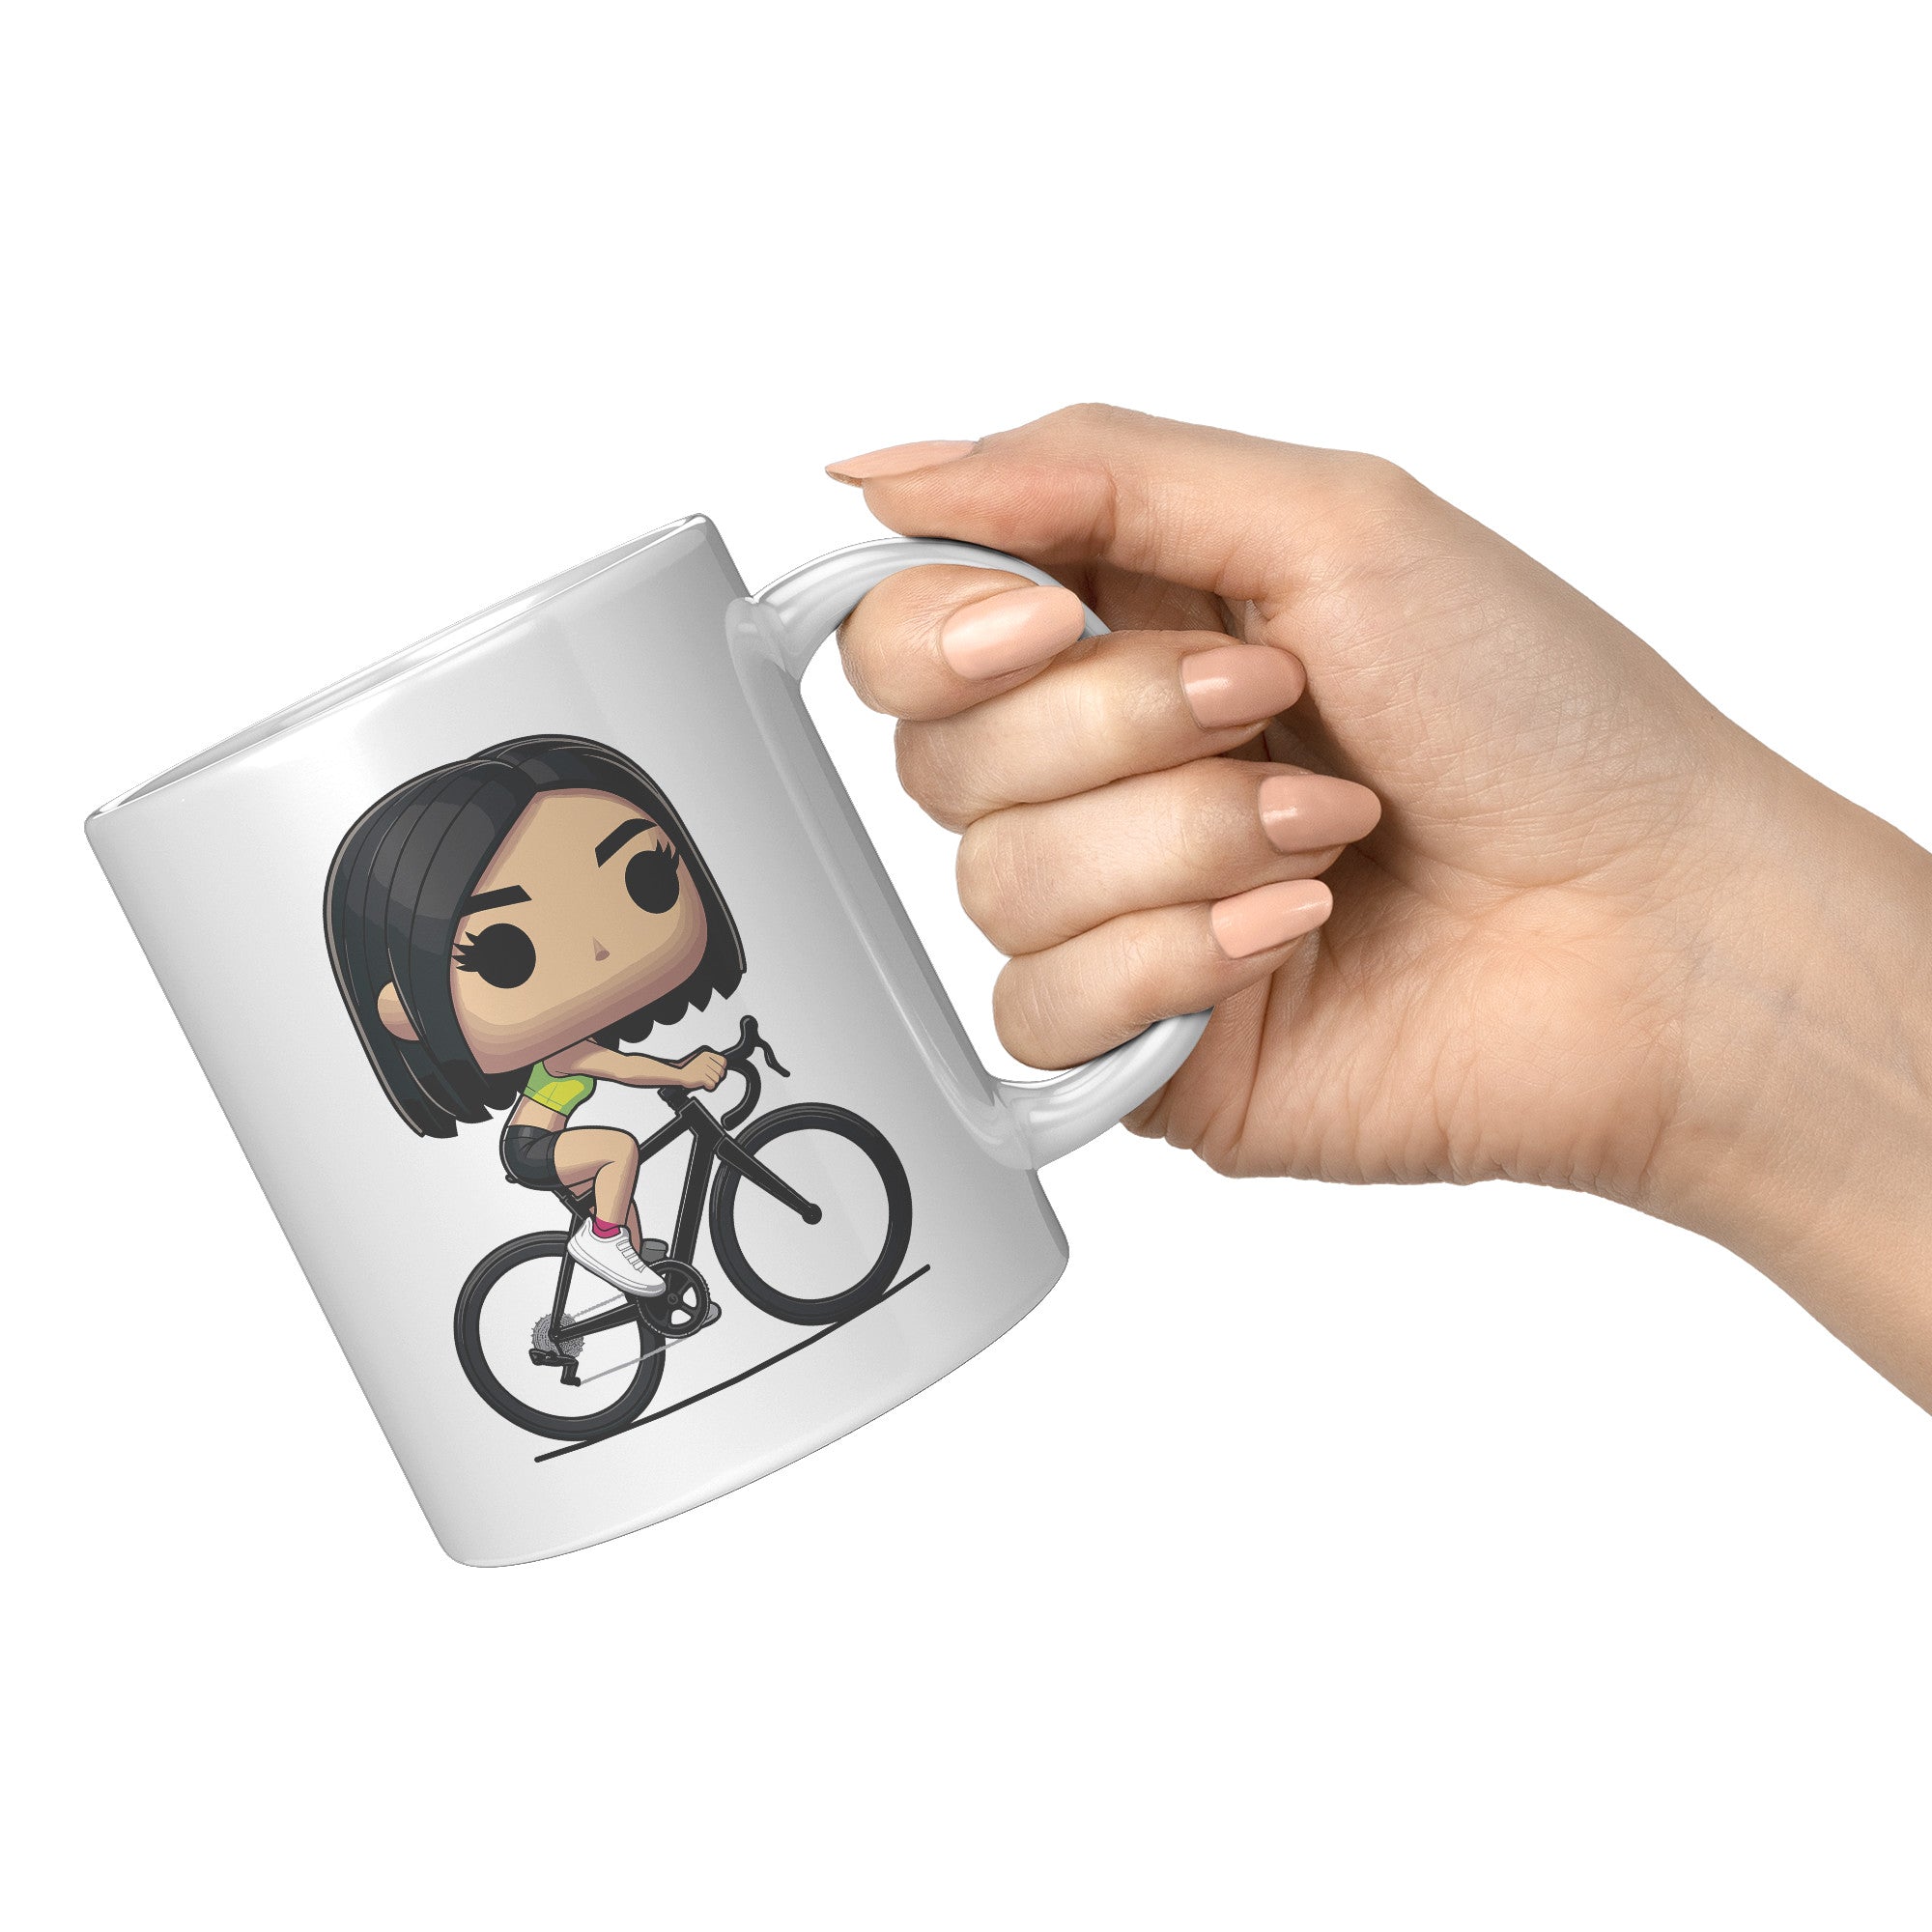 "Funko Pop Triathlon Athlete Coffee Mug - Multisport Morning Brew Cup - Ideal Gift for Triathletes - Swim, Bike, Run Inspired Mug" - O